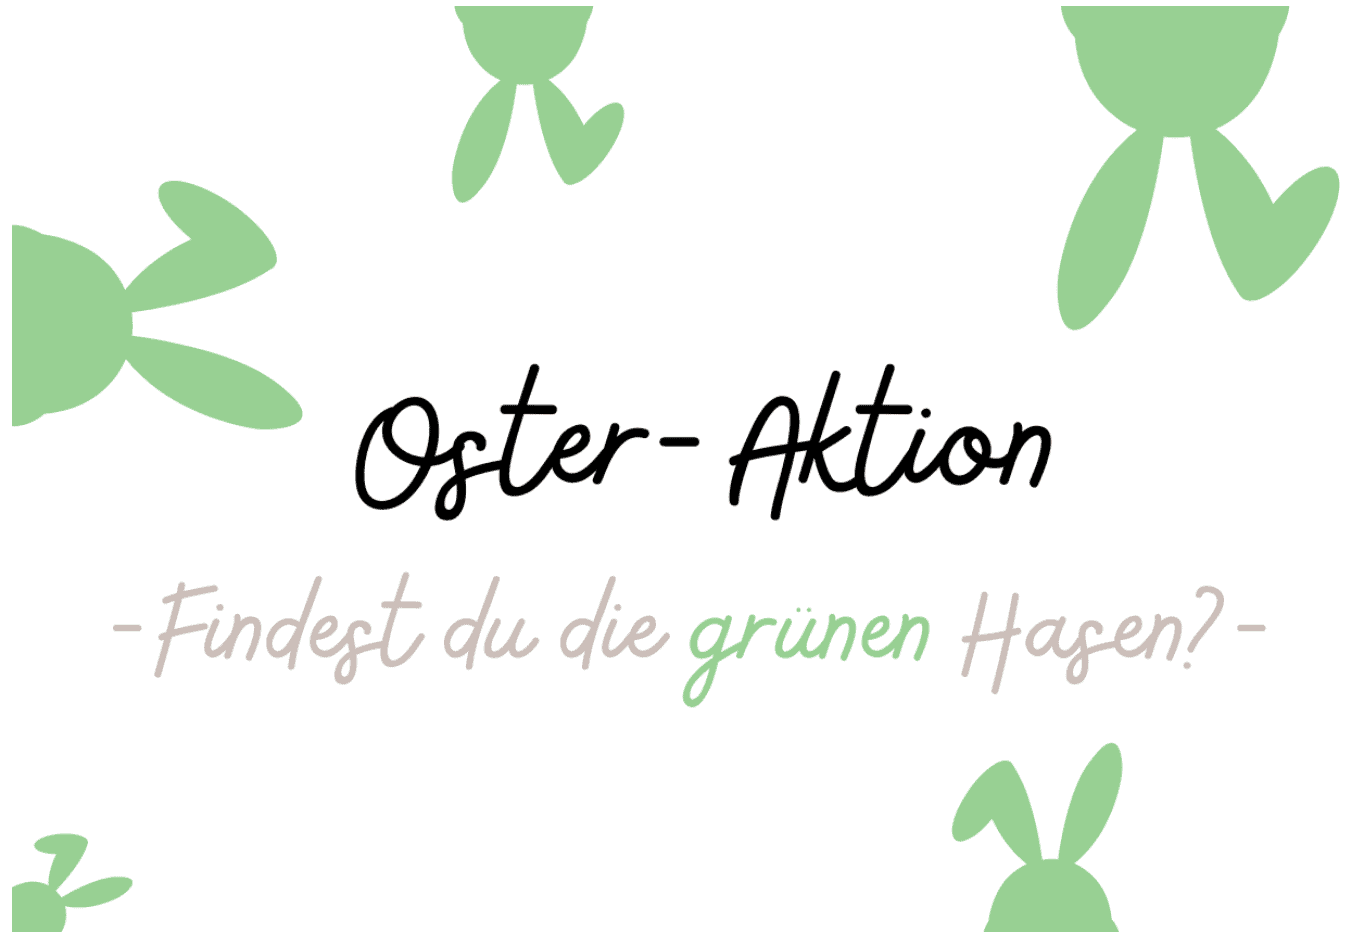 case_Salzgitter Oster-Aktion - Wer findet die grünen Hasen?